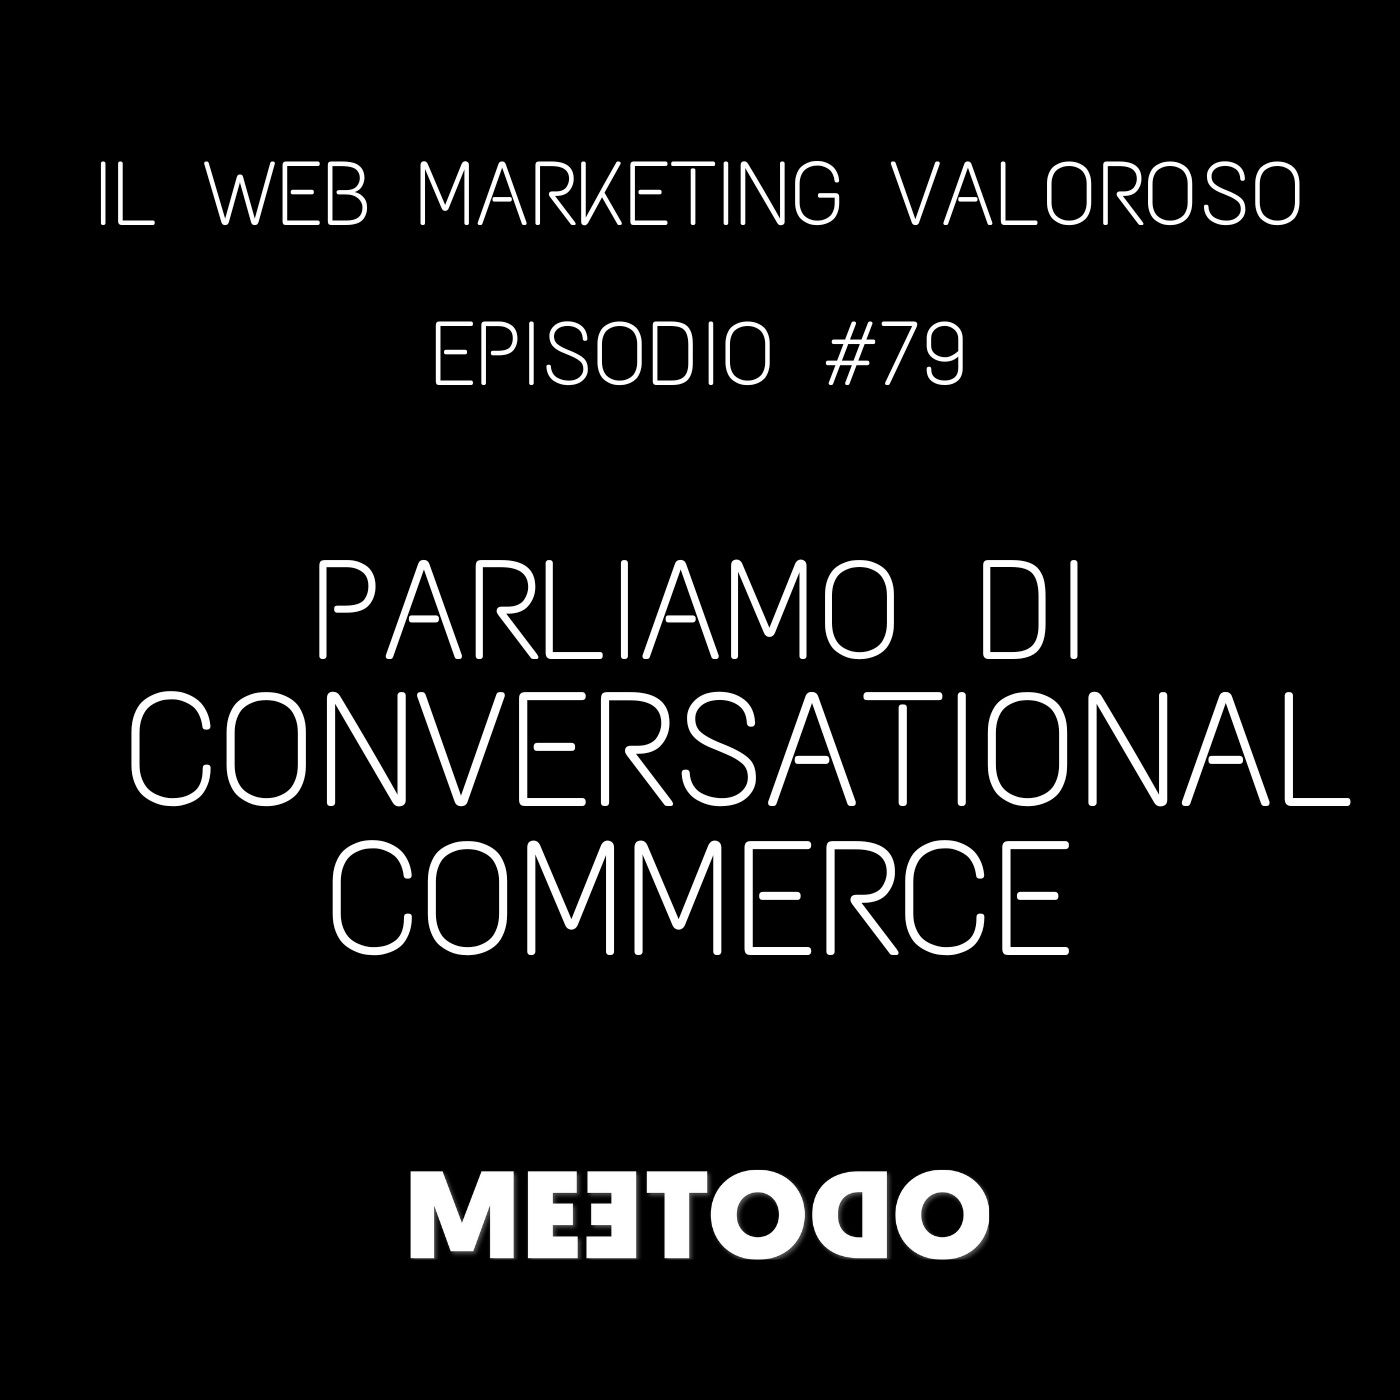 #79 - Aumentare le vendite attraverso il conversational commerce